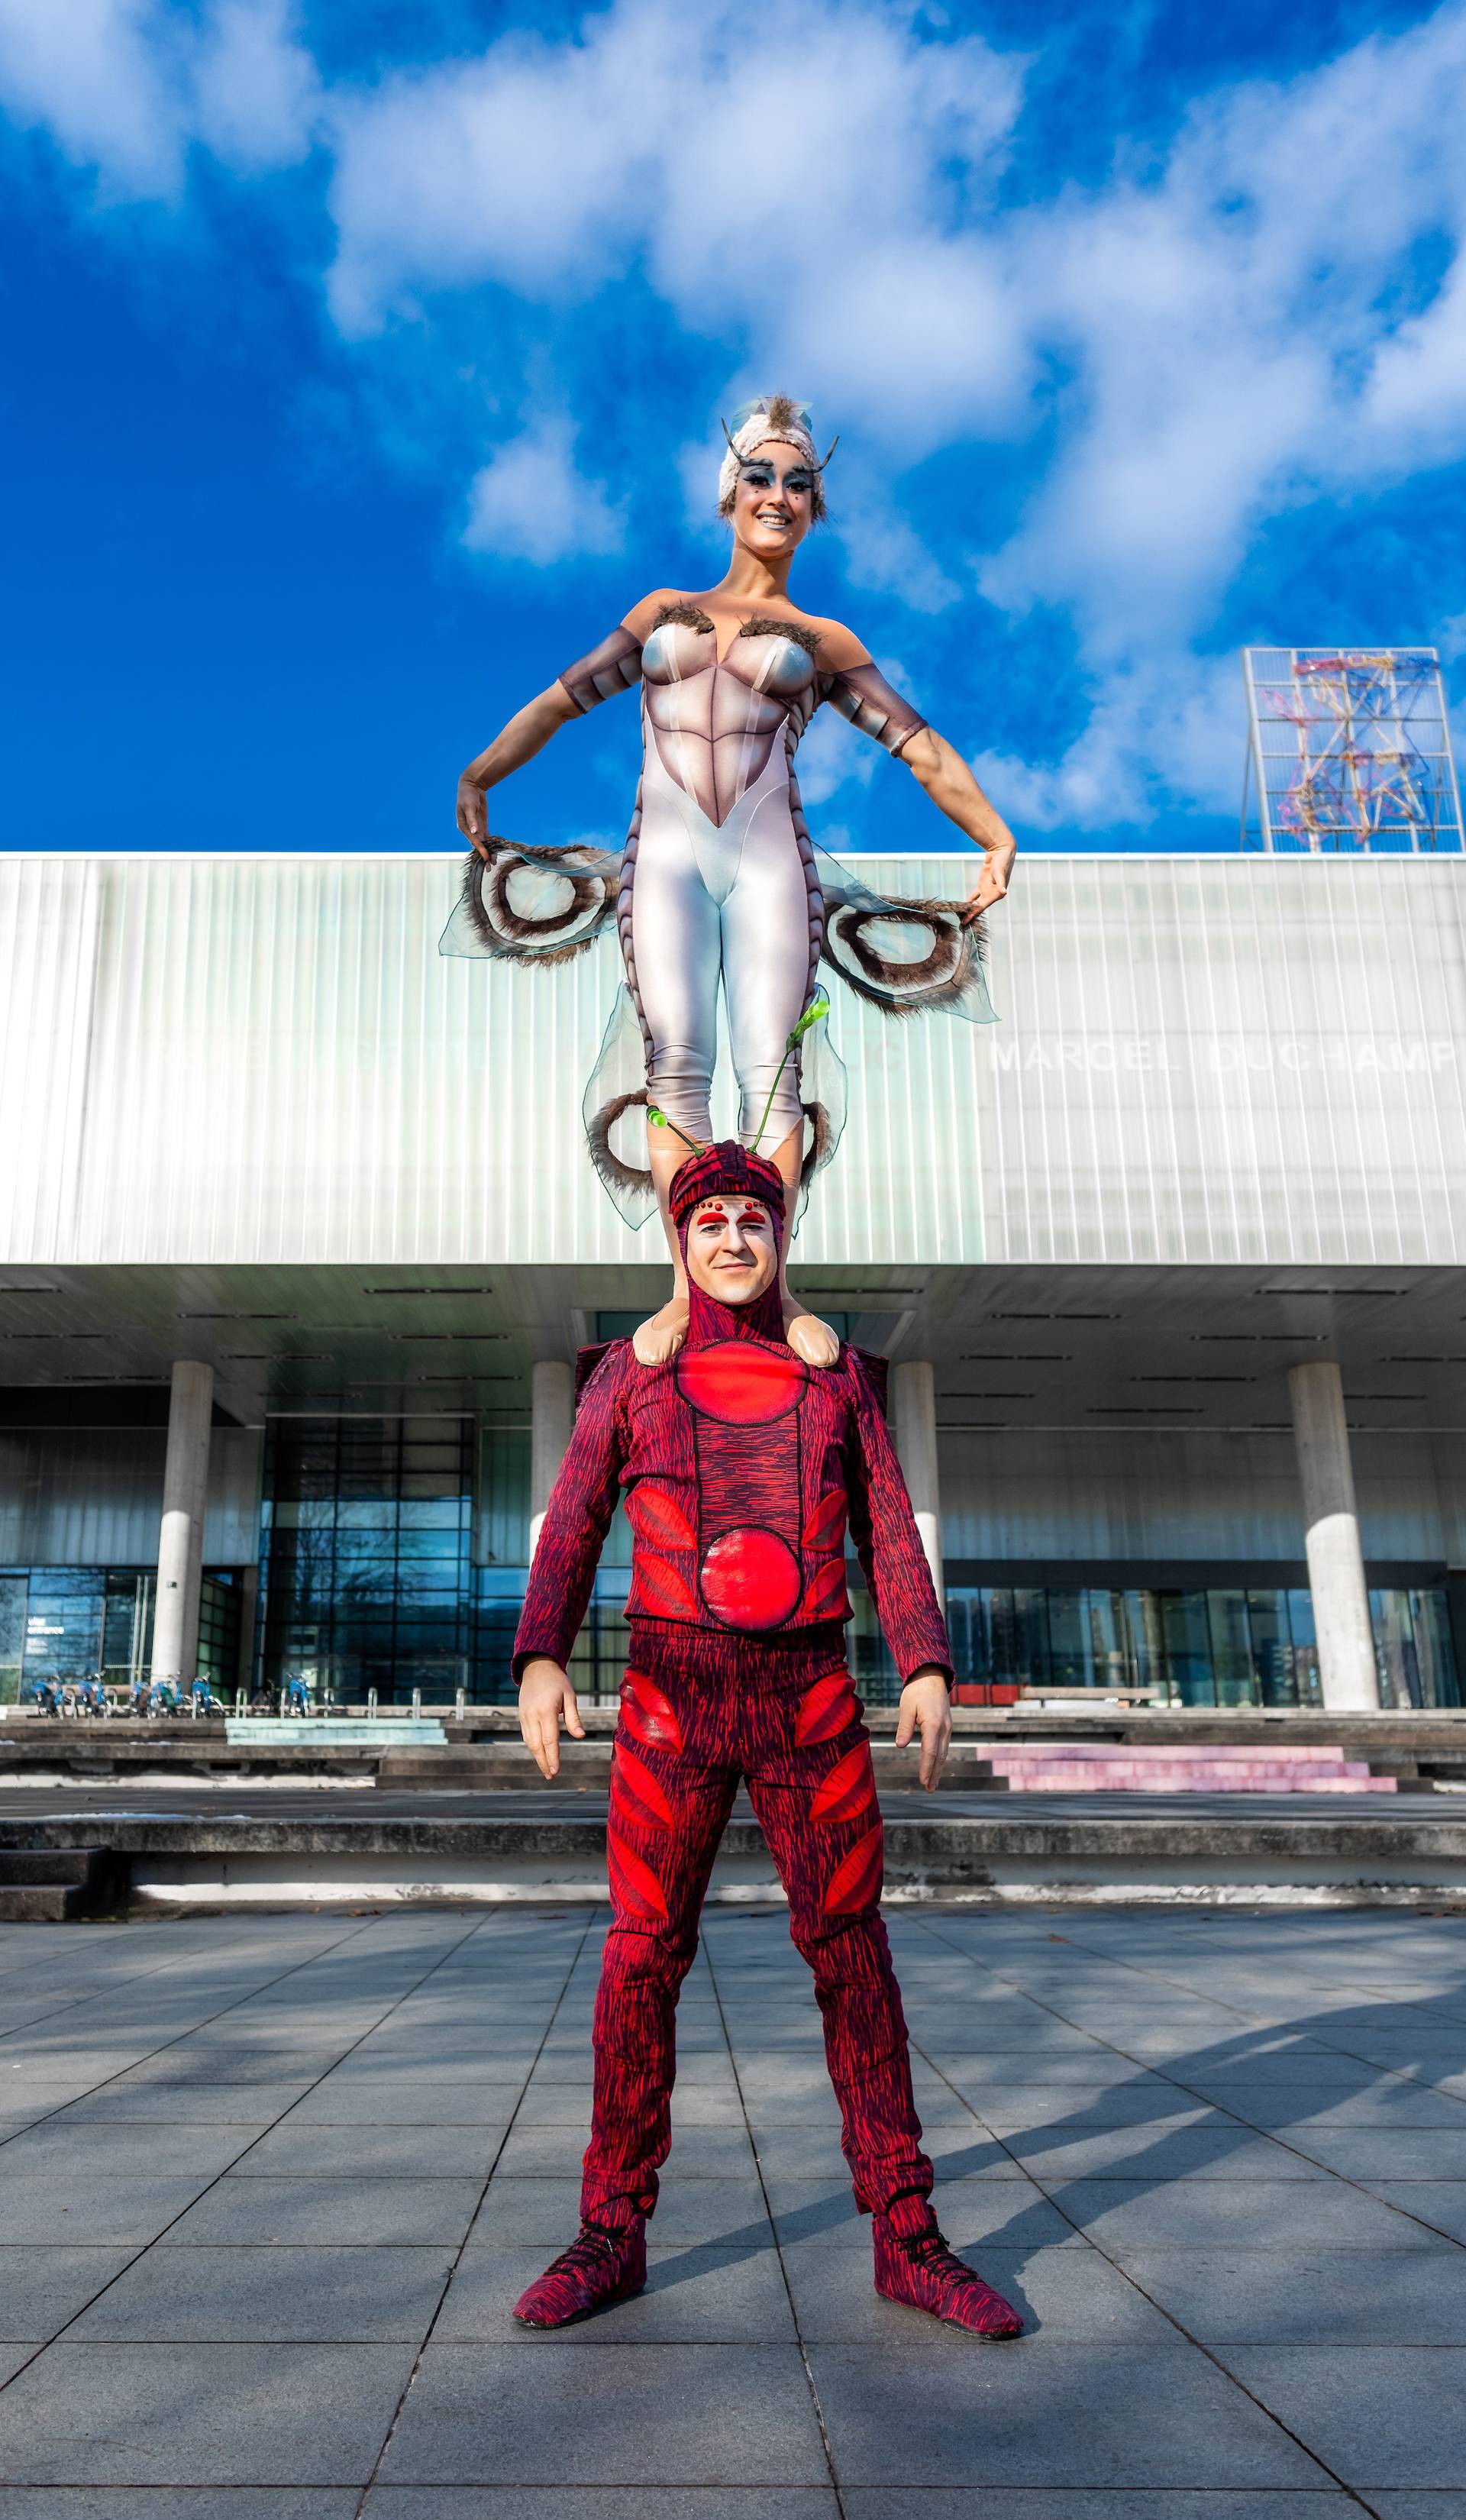 Cirque du Soleil umjetnici posjetili zagrebačke lokacije uoči OVO premijere